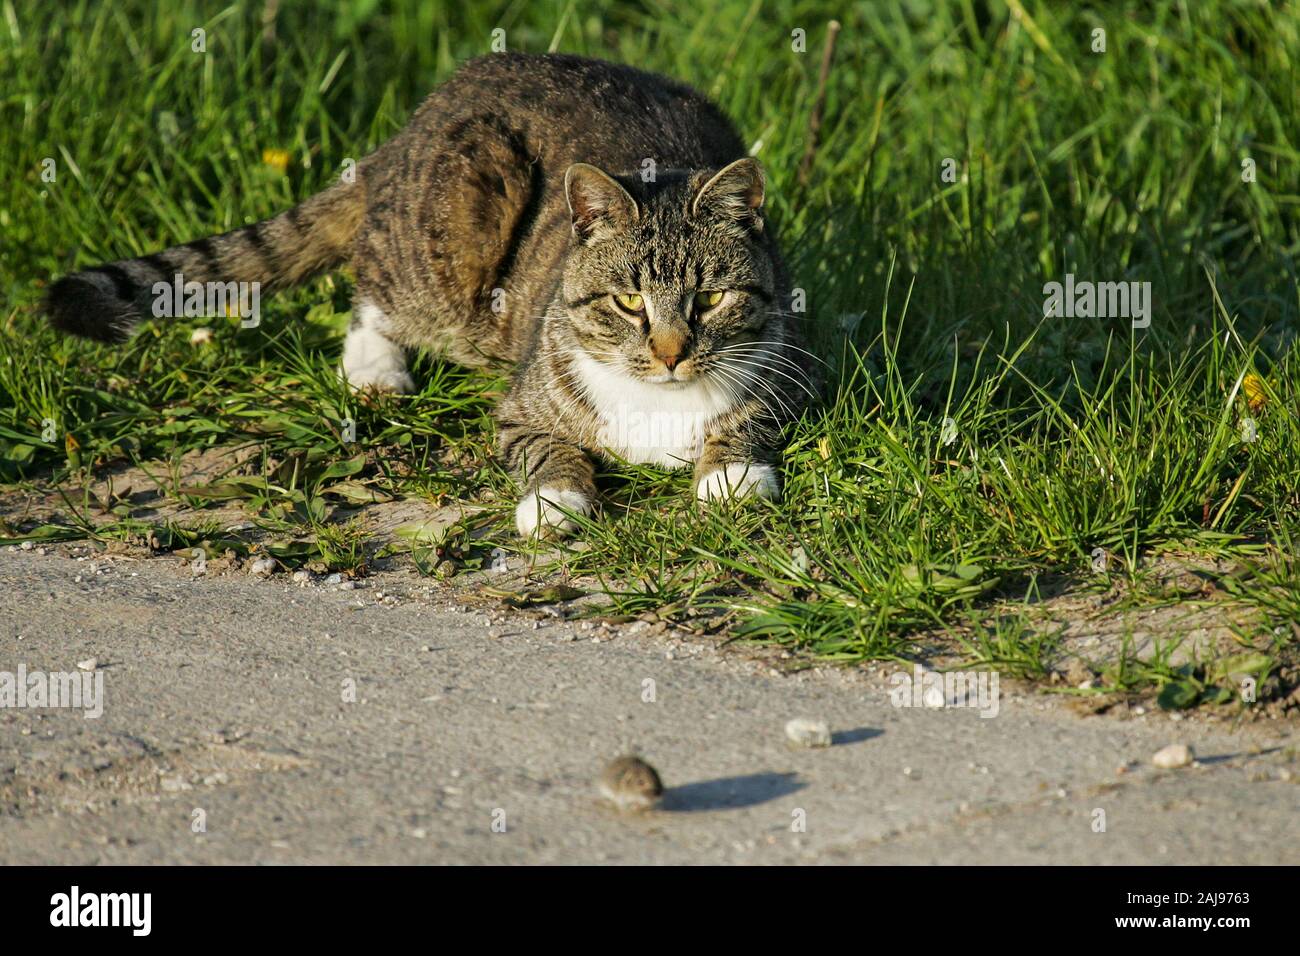 Los gatos domésticos (Felis catus), caza y jugar con Common Vole (Microtus arvalis), Brandeburgo, Alemania Foto de stock